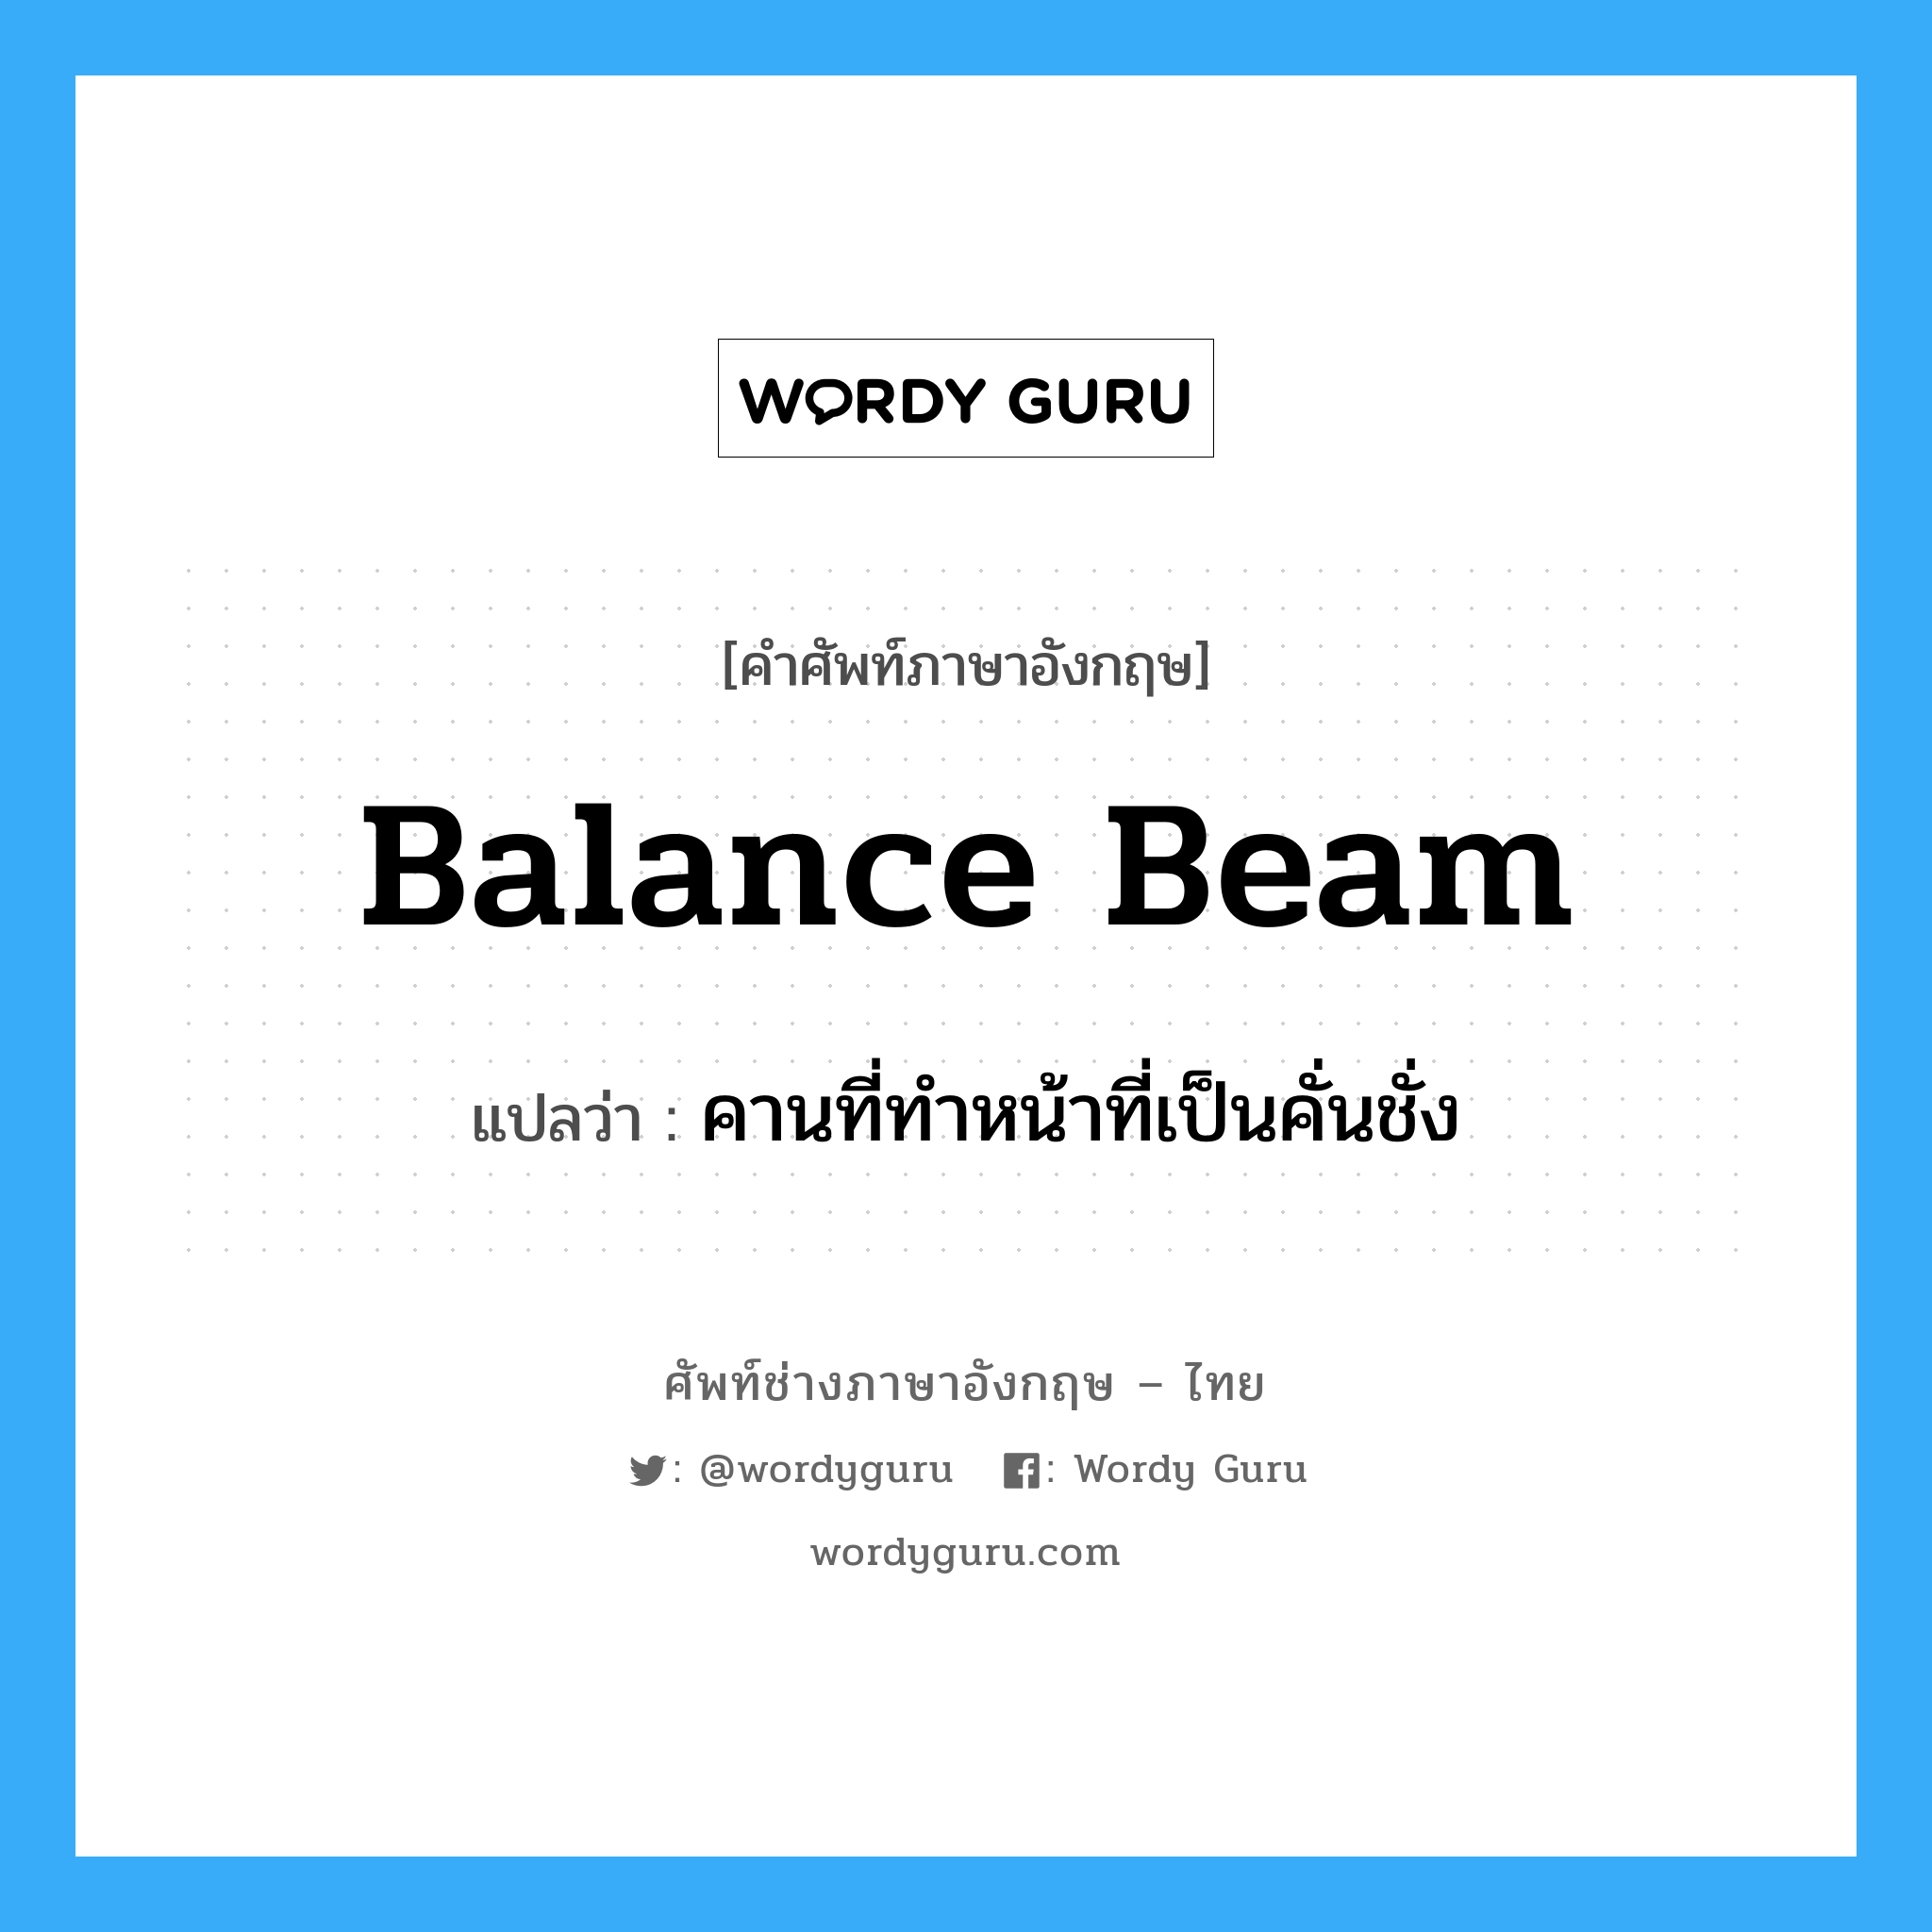 คานที่ทำหน้าที่เป็นคั่นชั่ง ภาษาอังกฤษ?, คำศัพท์ช่างภาษาอังกฤษ - ไทย คานที่ทำหน้าที่เป็นคั่นชั่ง คำศัพท์ภาษาอังกฤษ คานที่ทำหน้าที่เป็นคั่นชั่ง แปลว่า balance beam